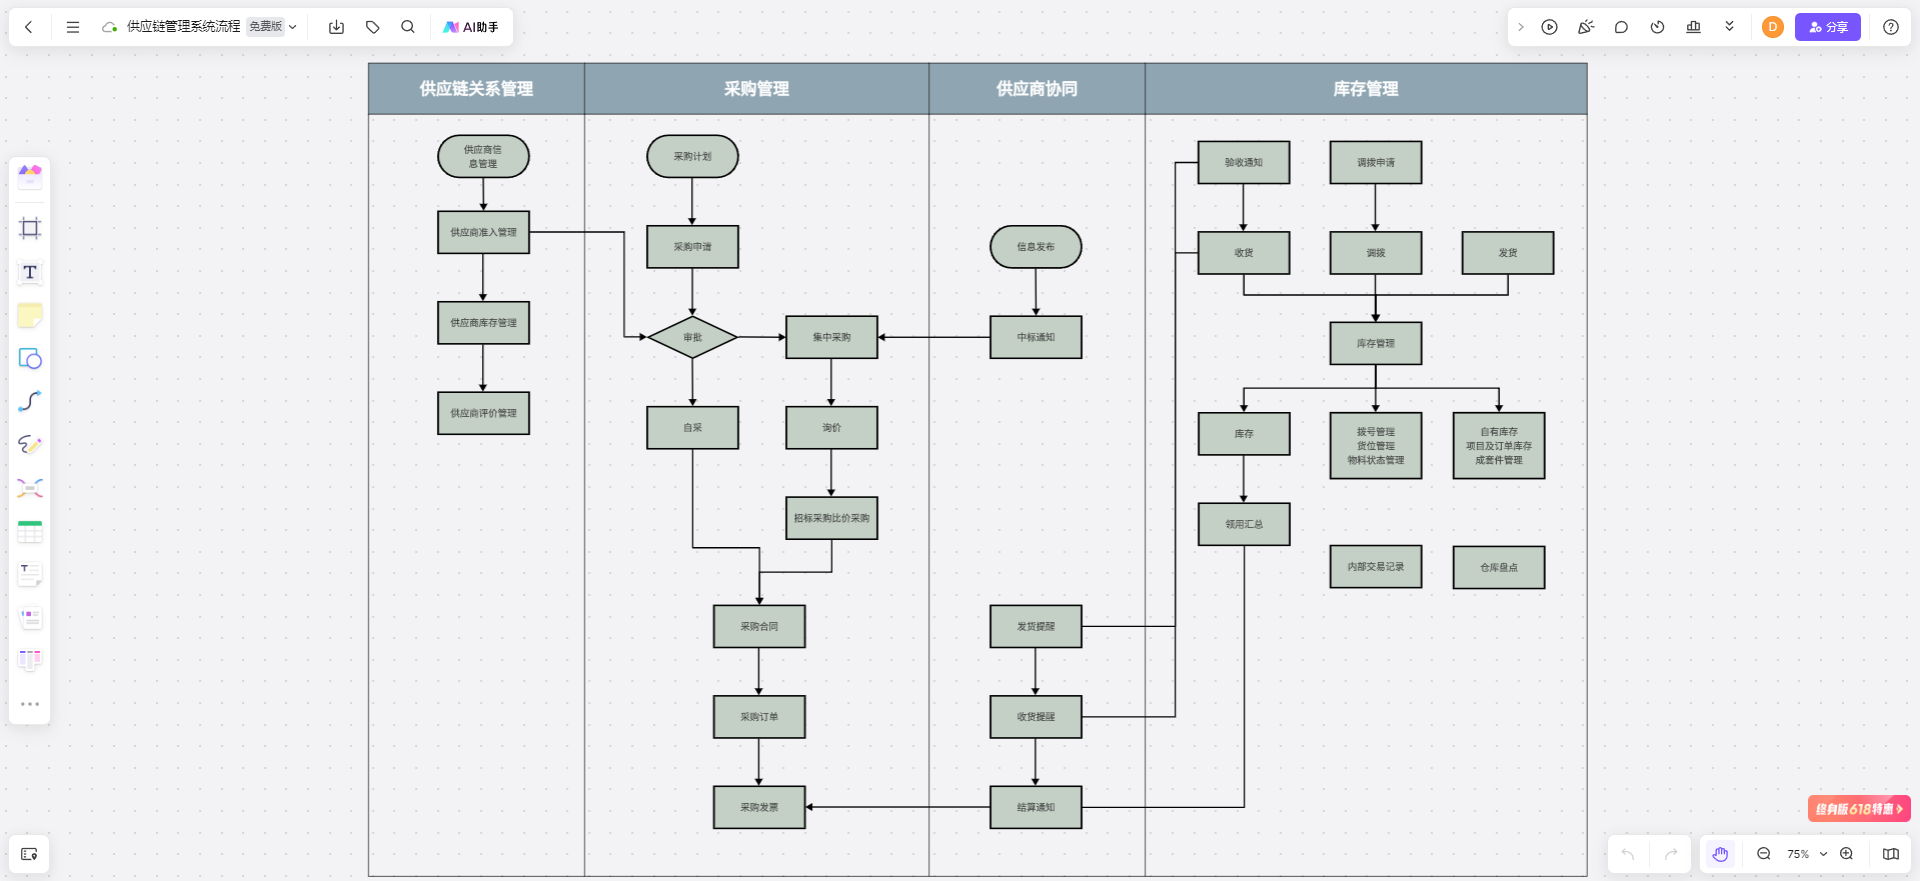 供应链管理系统流程图